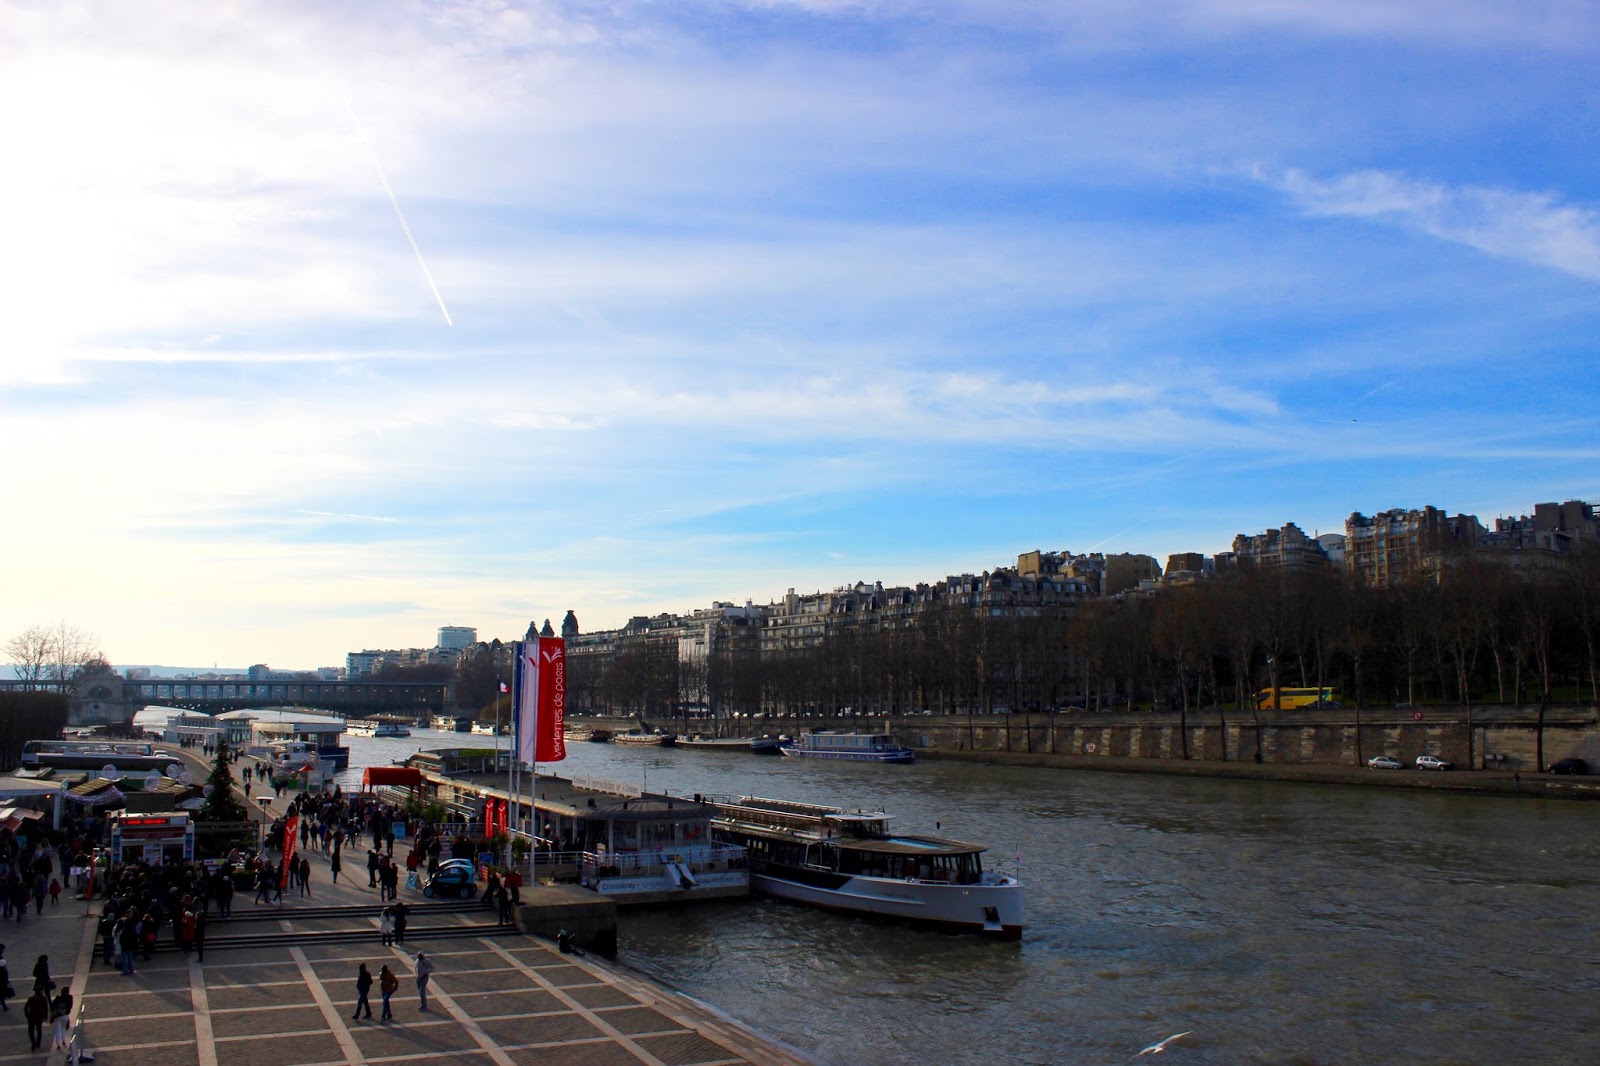 Jalan-Jalan di Paris - Seine River Cruise